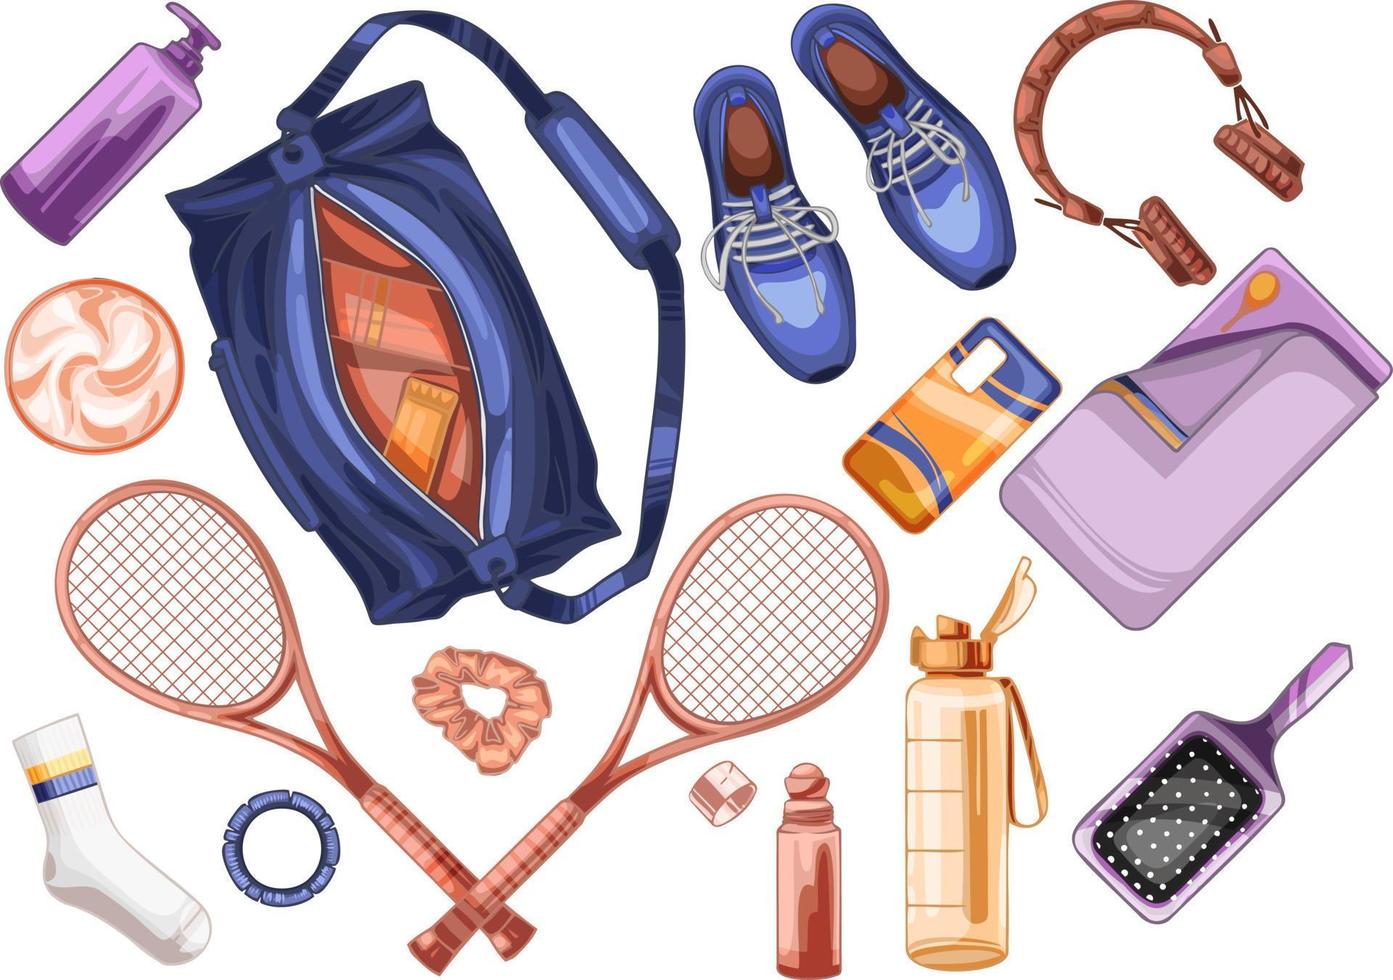 artículos deportivos. bolsa de deporte, cohetes de tenis, zapatos, botella, toalla, artilugios y cosméticos vector